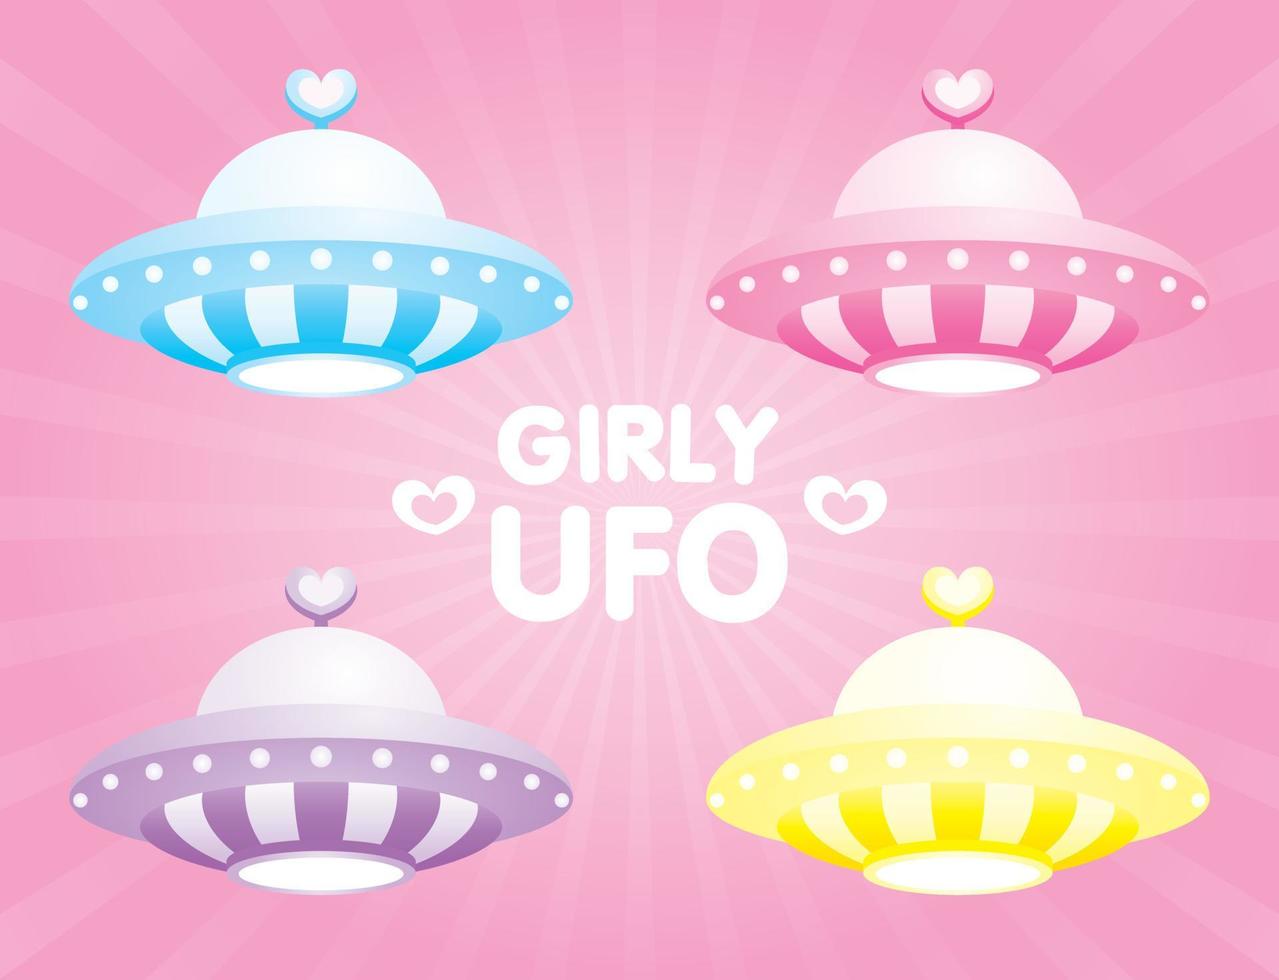 carino girly pastello ufo illustrazione raccolta vettoriale